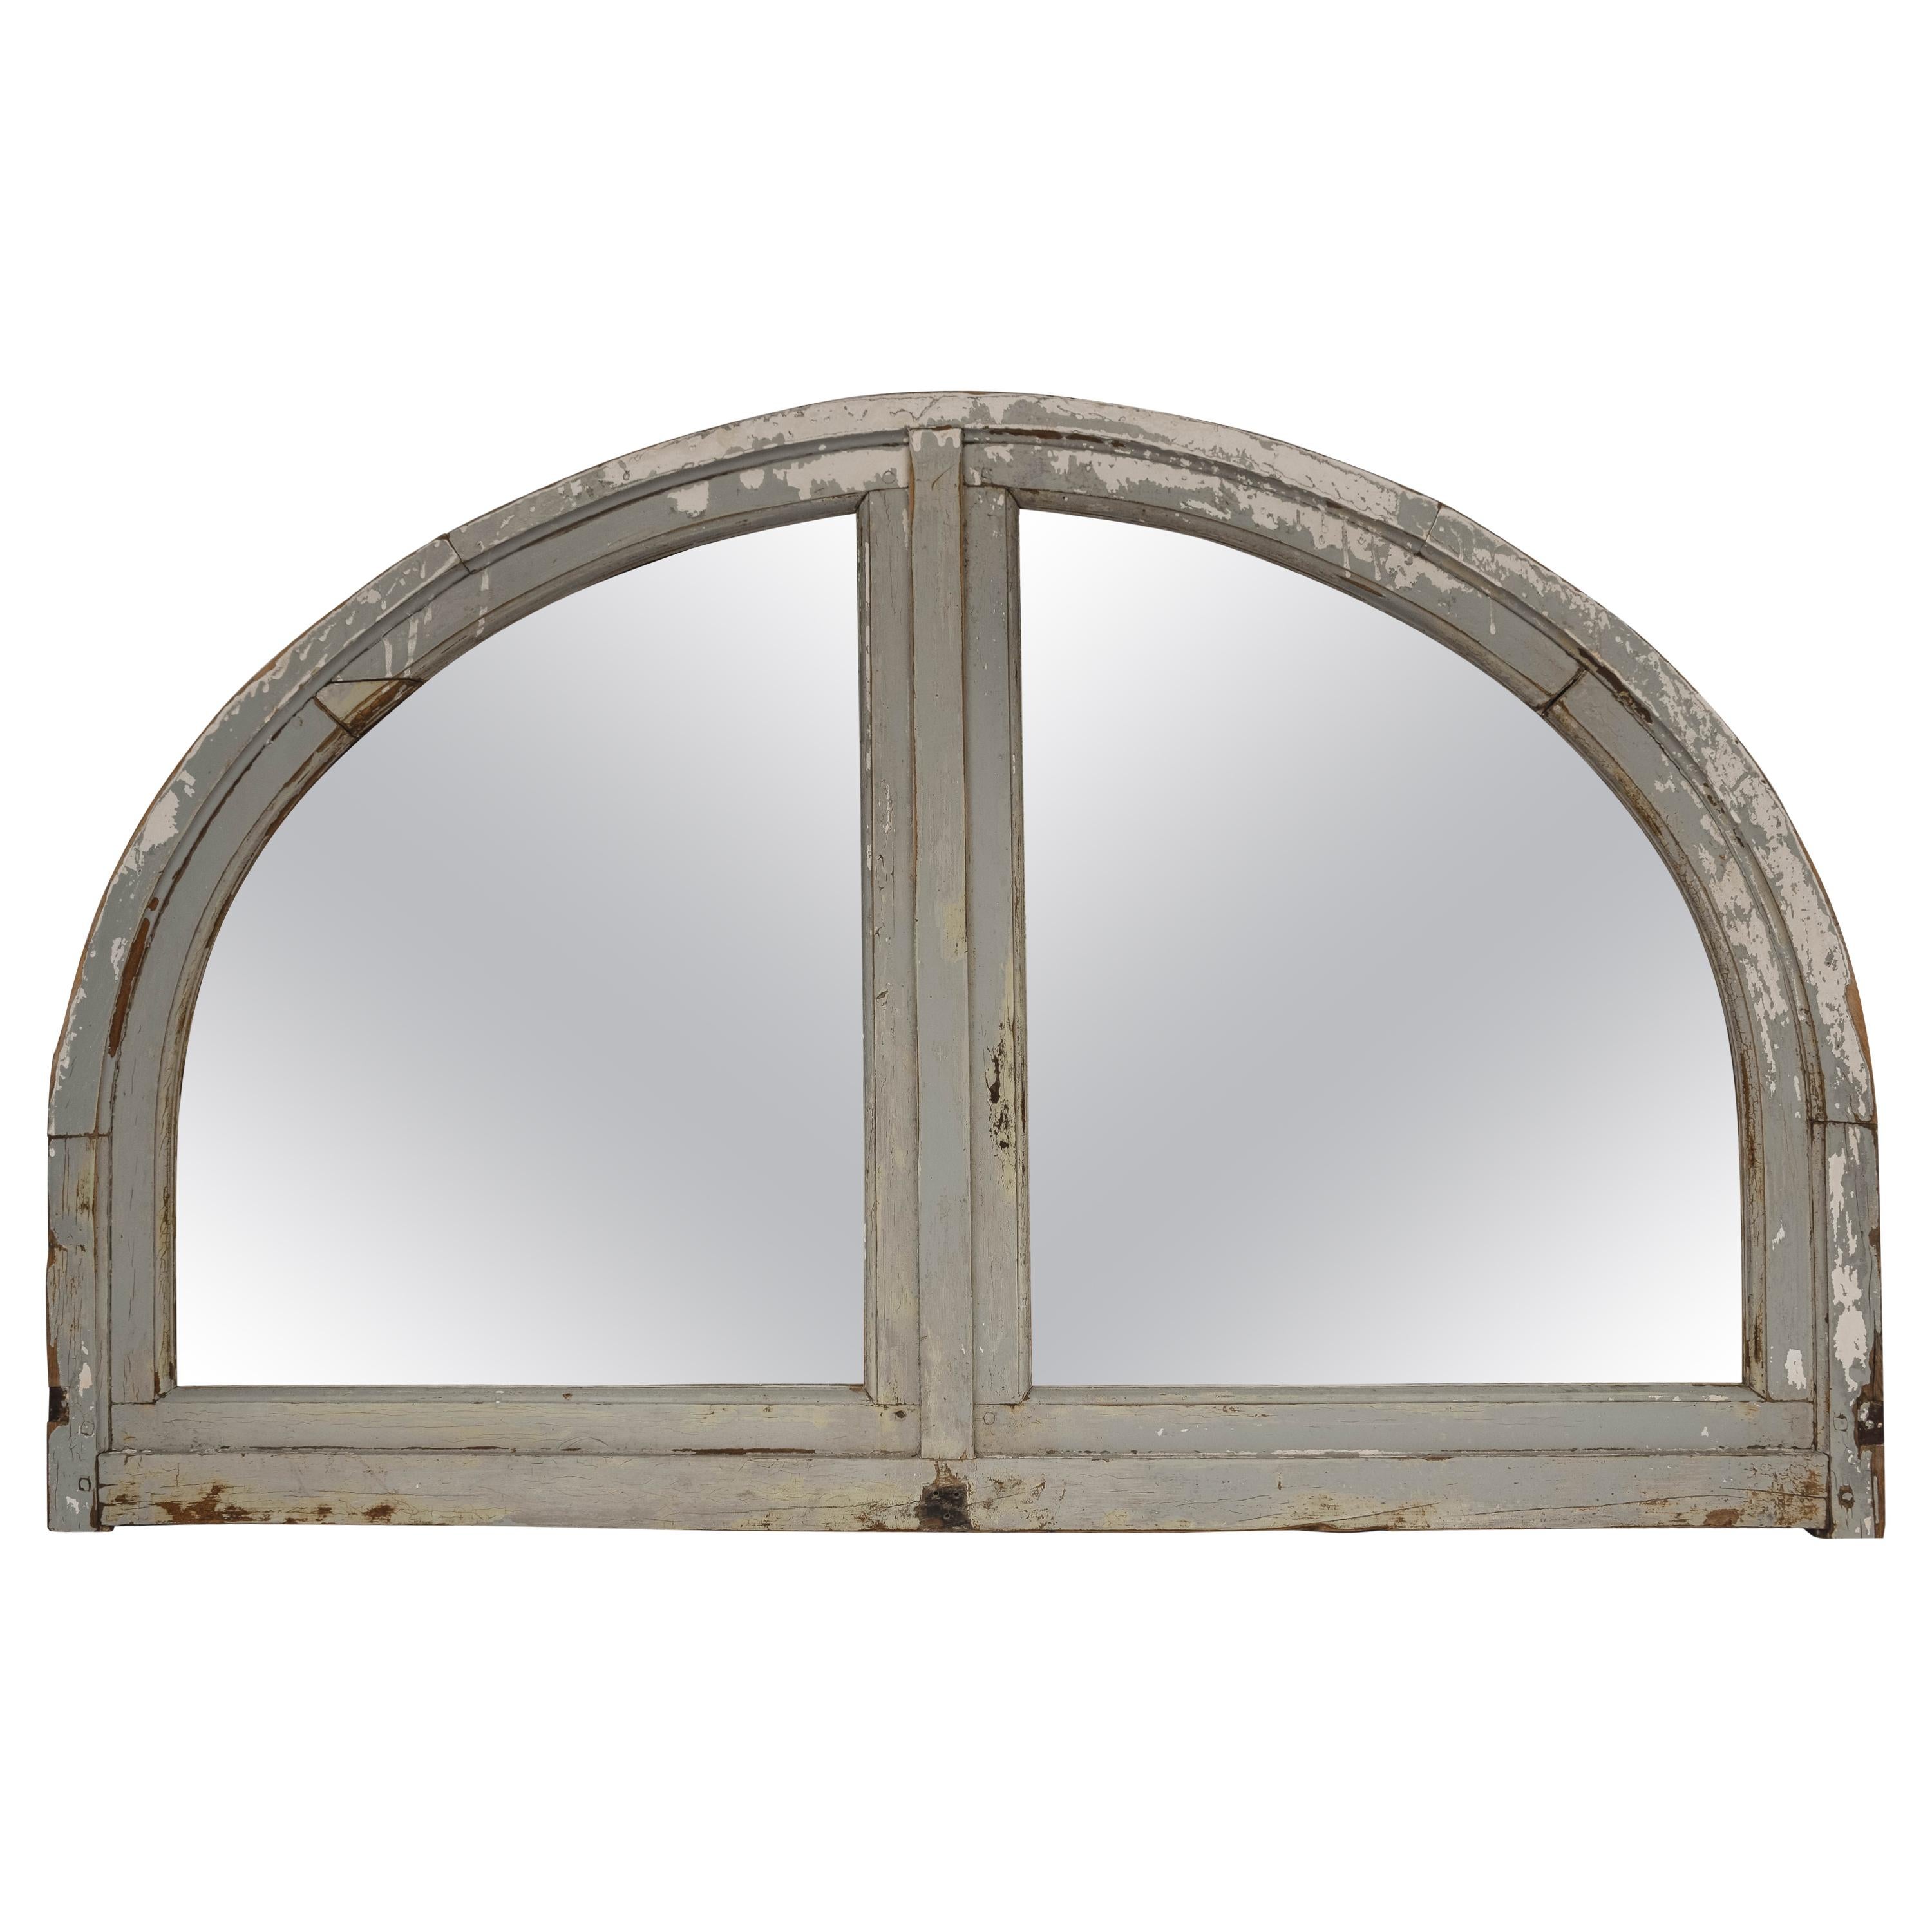 Antique French Half Round Window Casement/ Mirror For Sale